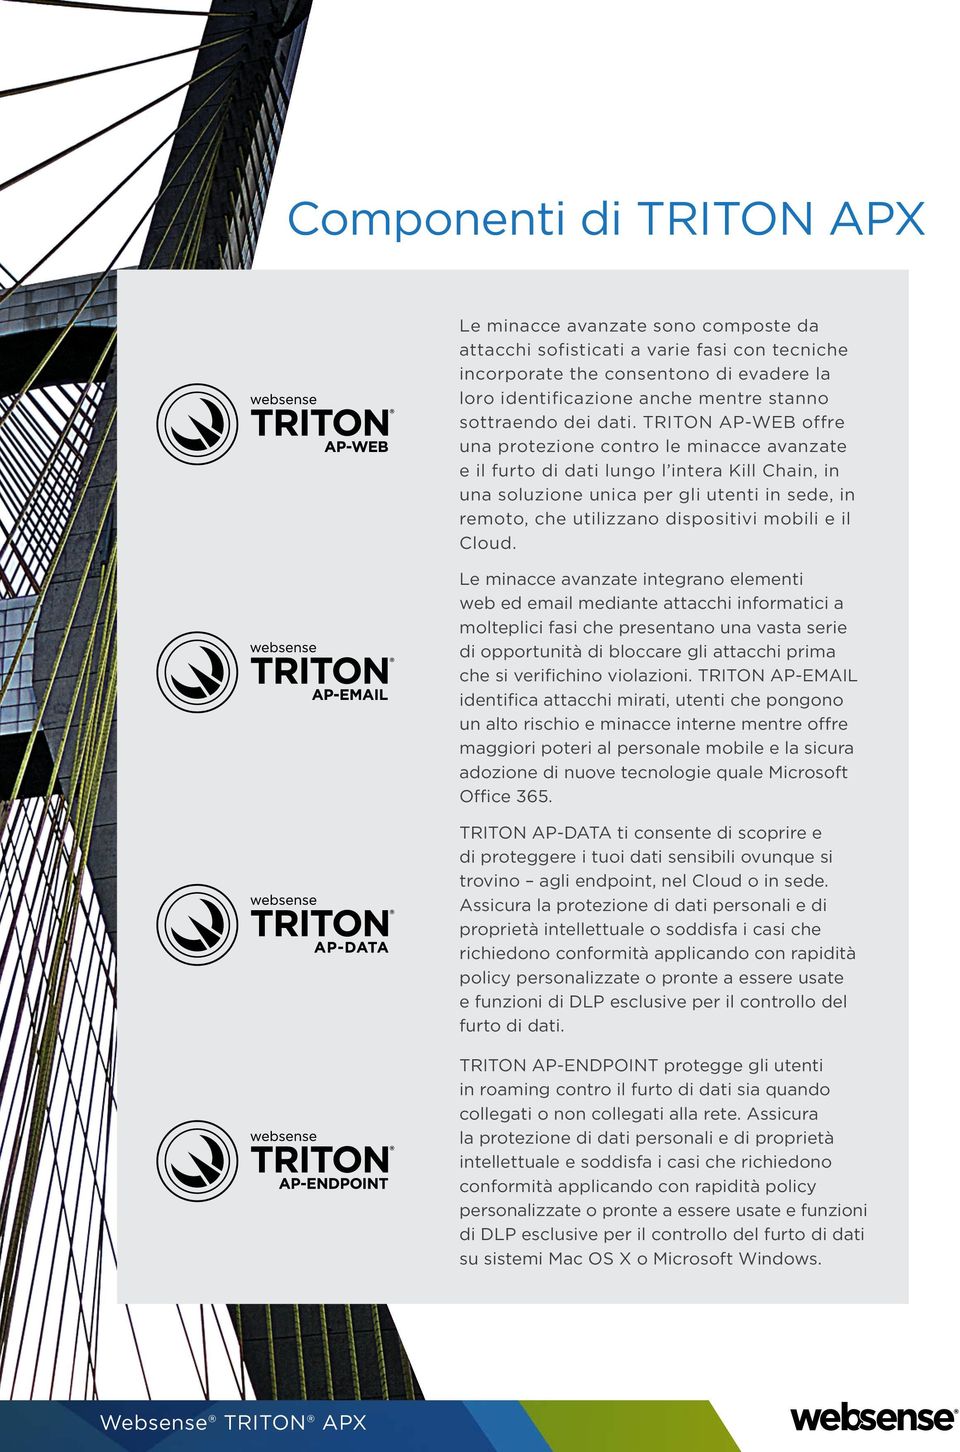 TRITON AP-WEB offre una protezione contro le minacce avanzate e il furto di dati lungo l intera Kill Chain, in una soluzione unica per gli utenti in sede, in remoto, che utilizzano dispositivi mobili